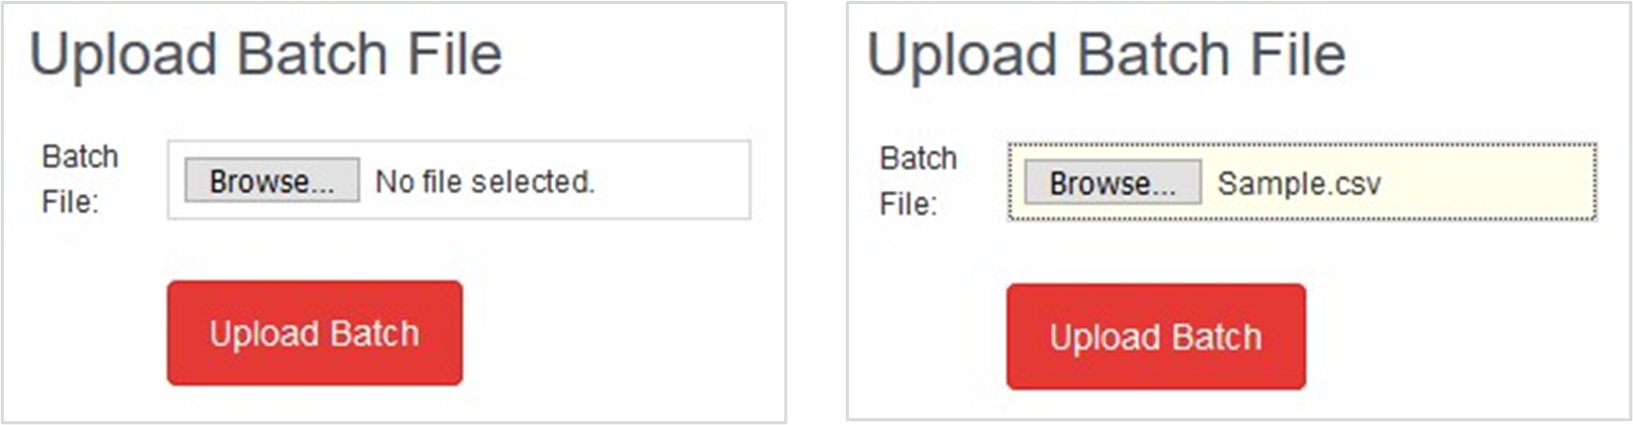 Upload Batch File